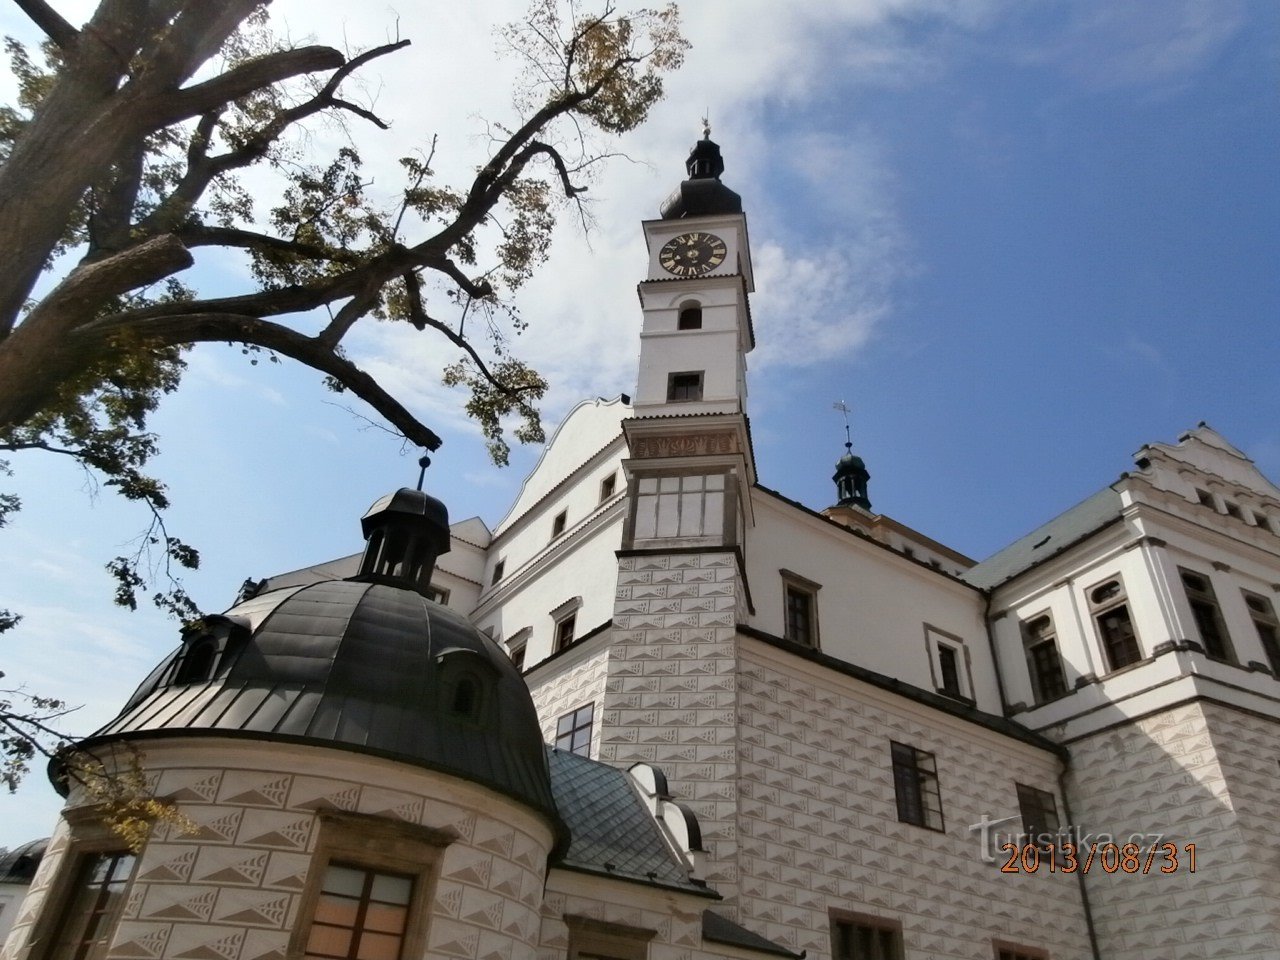 Castelo-Pardubice